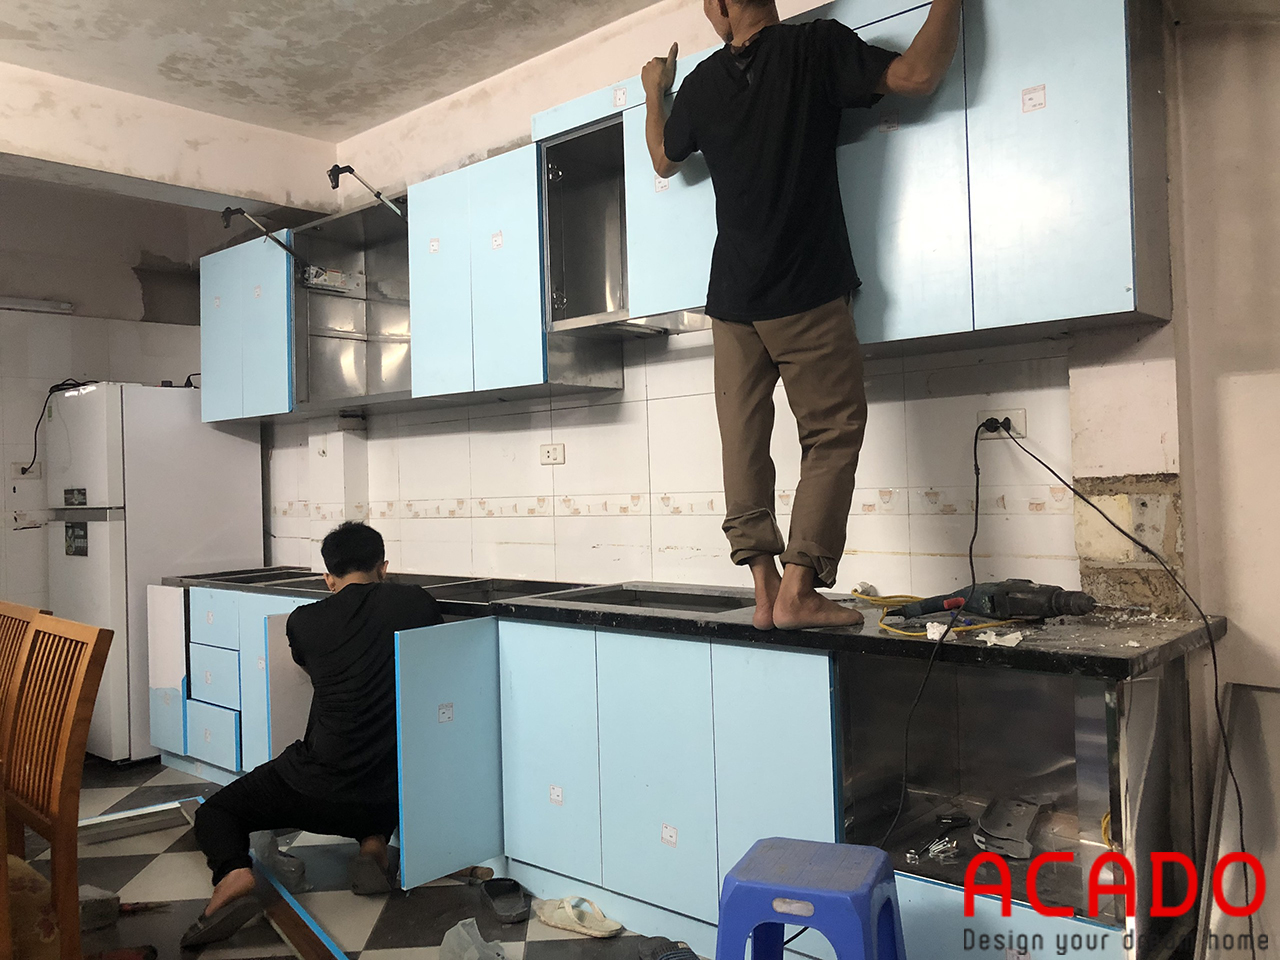 Thợ thi công ACADO đang tiến hành lắp đặt tủ bếp tại Kim Ngưu , gia đình chị Dung